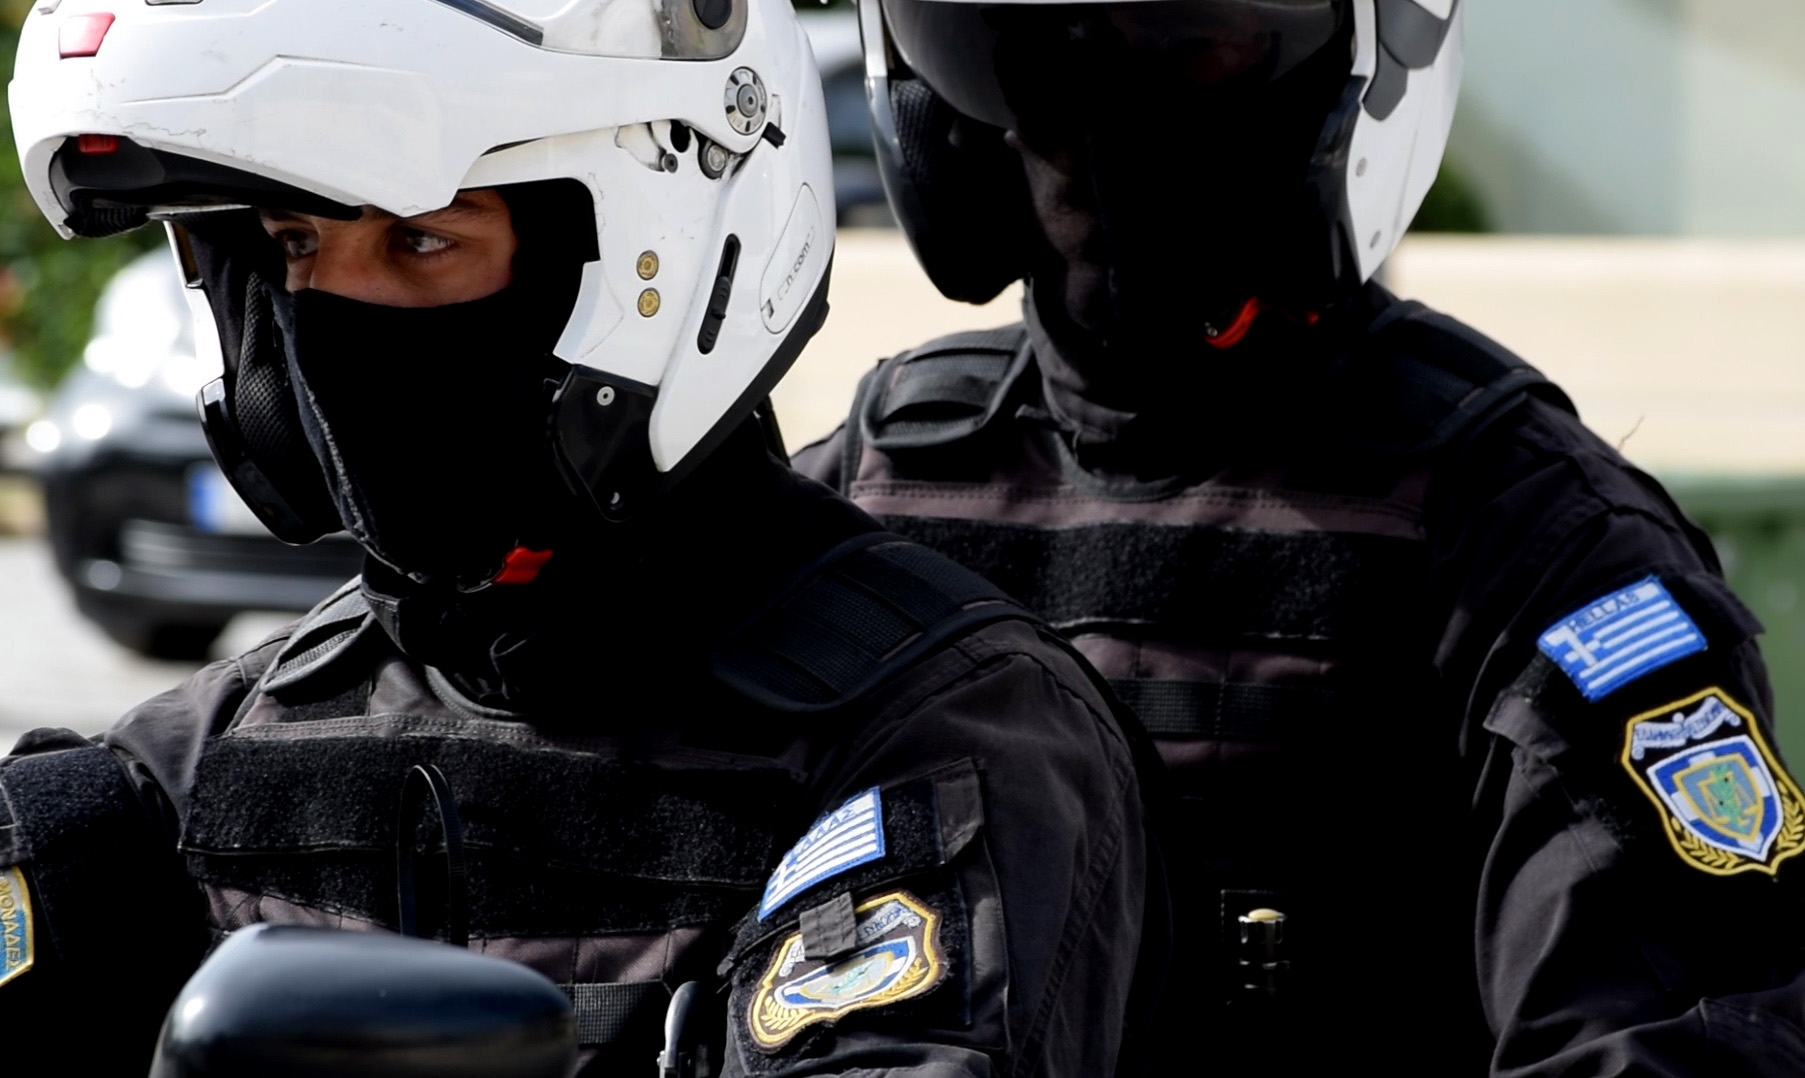 Ζάκυνθος: Έλεγχοι της αστυνομίας για τήρηση της απαγόρευσης κυκλοφορίας – Τι έκαναν οι περισσότεροι πολίτες;